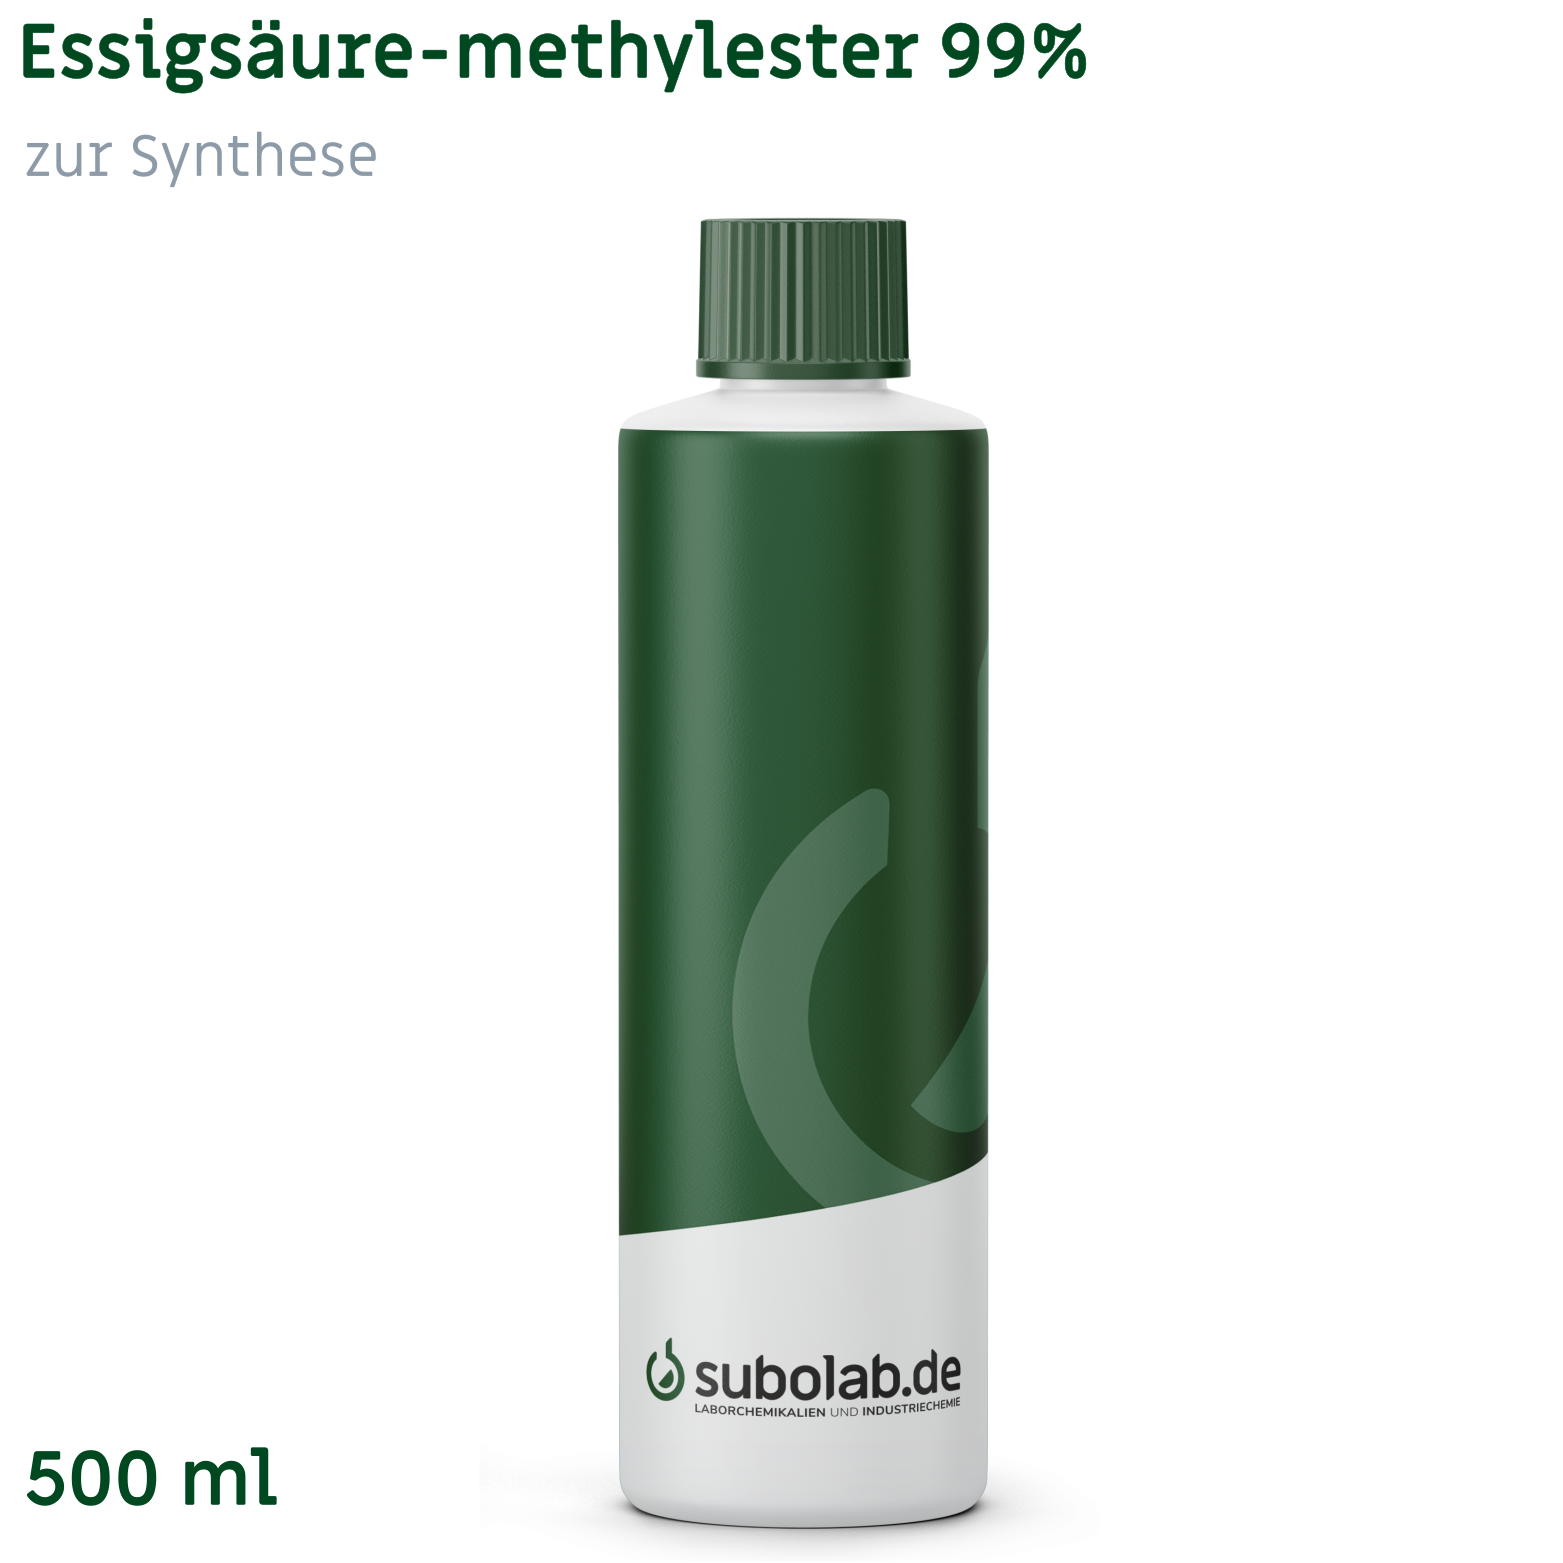 Bild von Essigsäure-methylester 99% zur Synthese (500 ml)